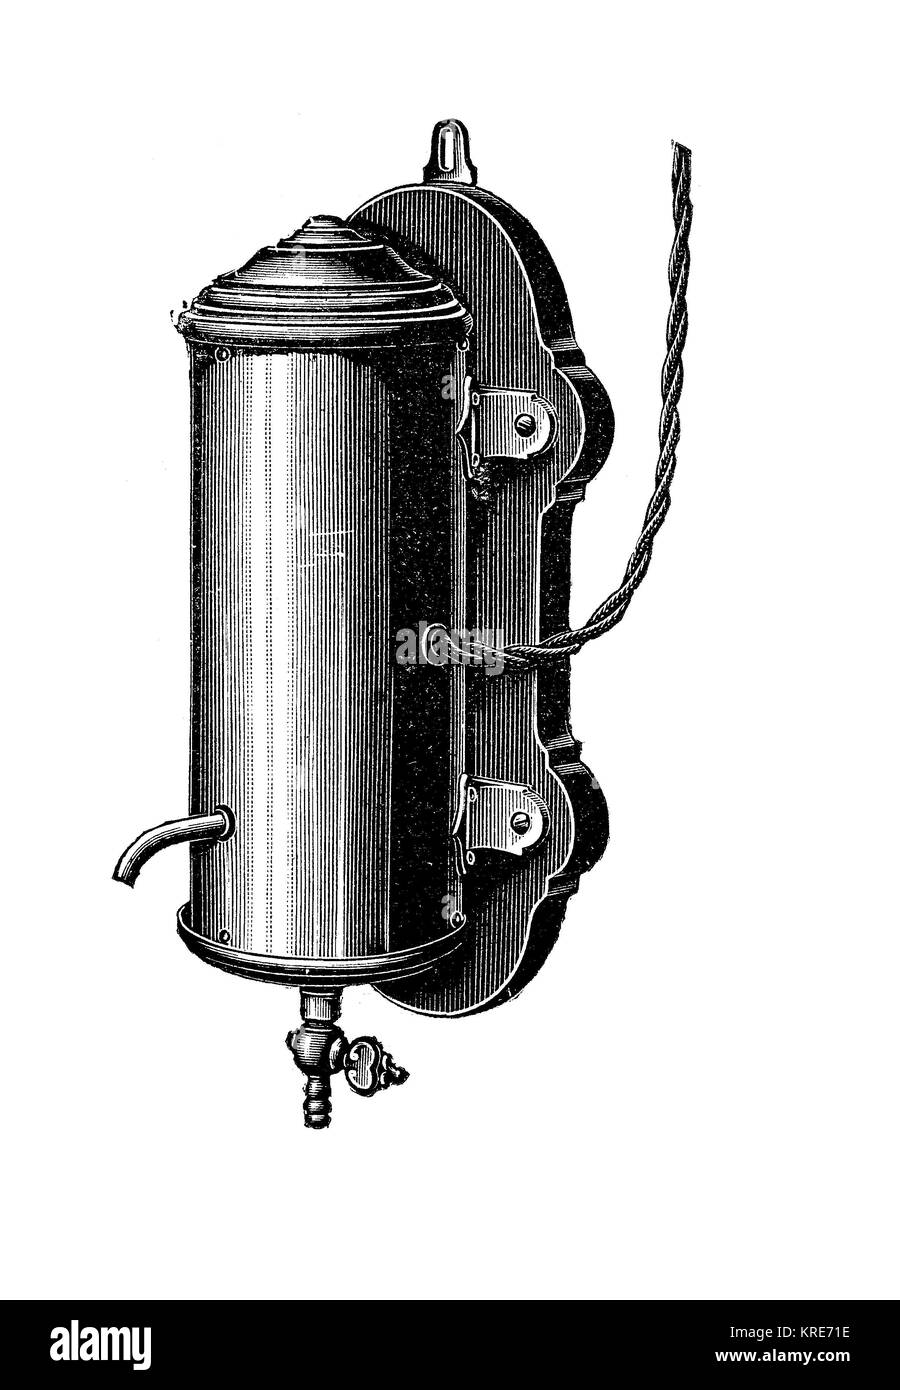 Wasser Heizung, elektrische Apparate für Heizung Wasser vom öffentlichen Stromversorger, Berlin, Deutschland, Industrie Produkt aus dem Jahr 1880, digita Stockfoto